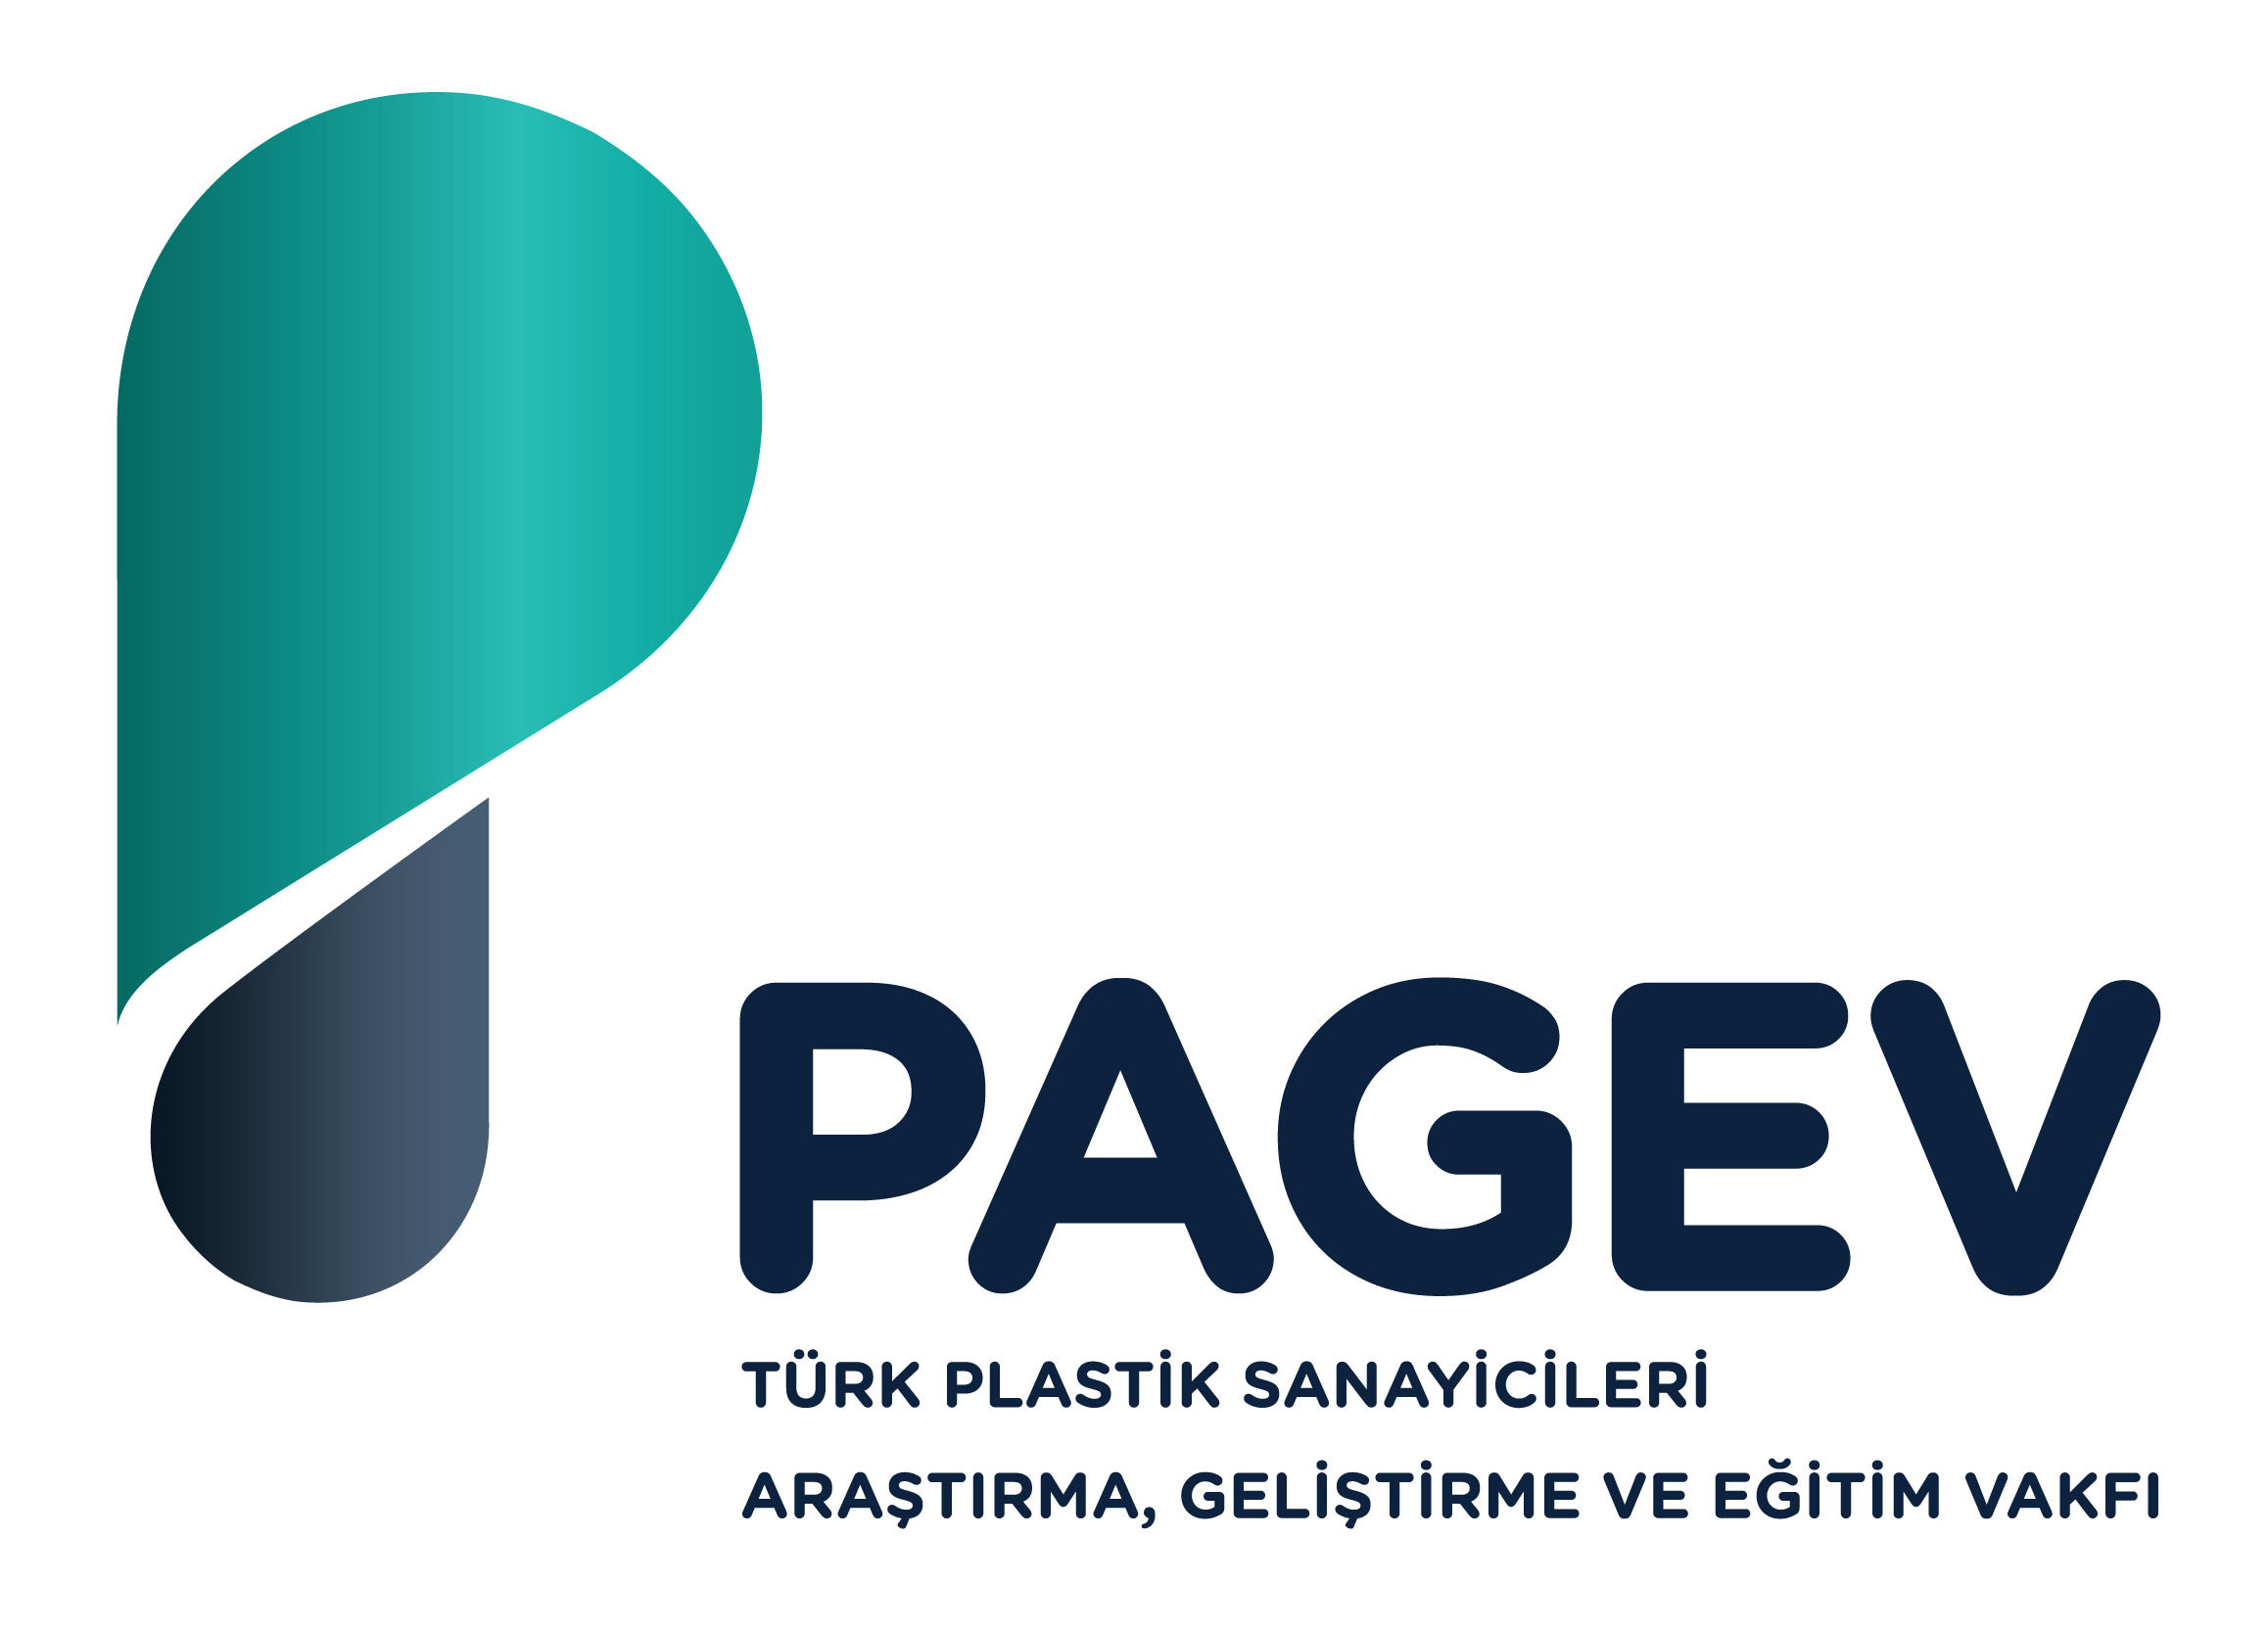 Pagev